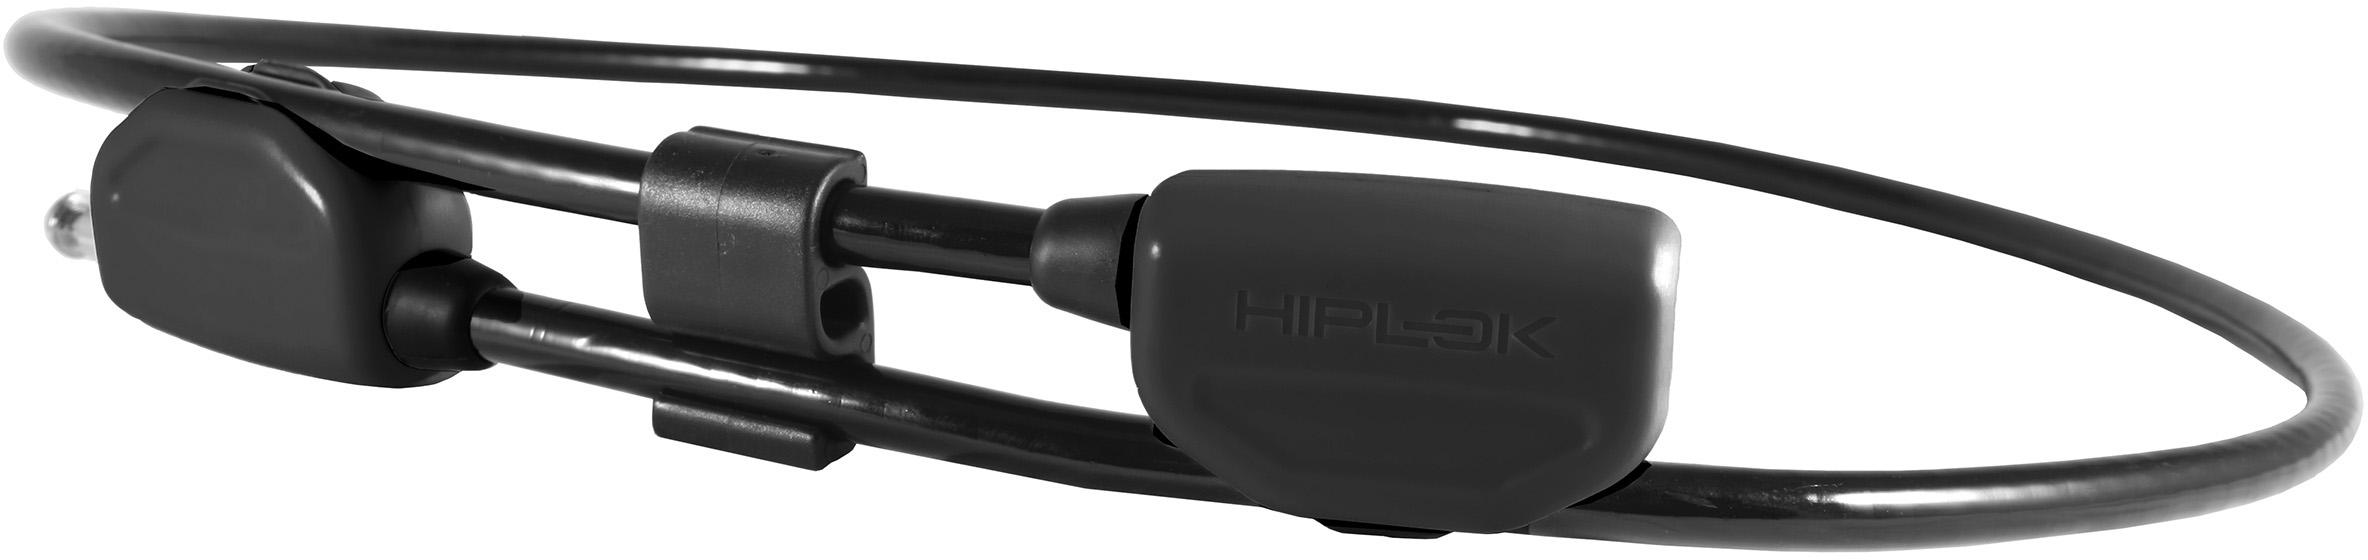 Hiplok Pop Cable Bike Lock - Black